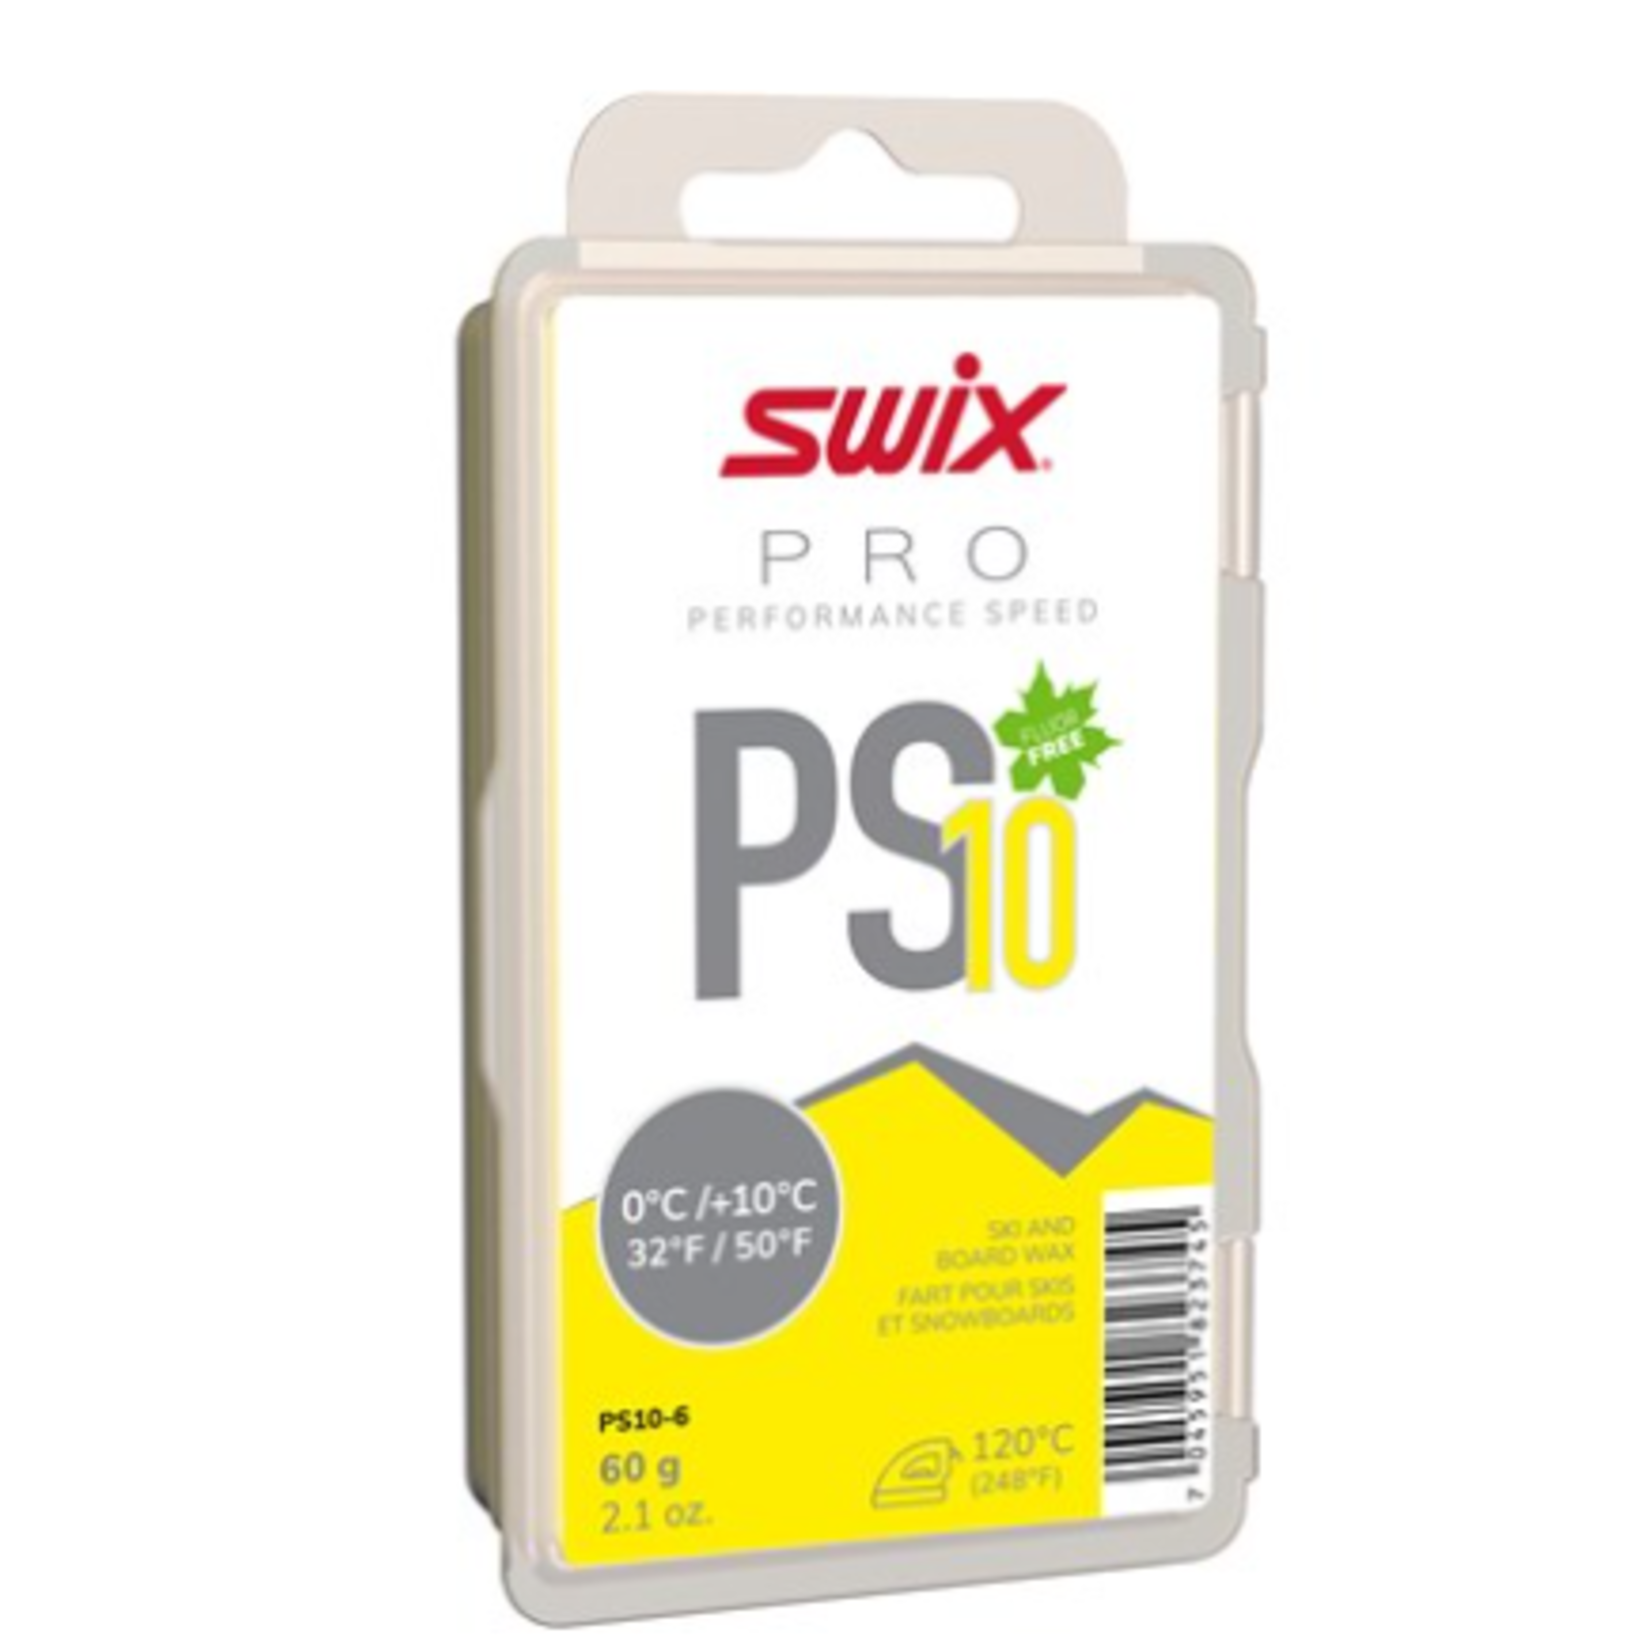 Swix Swix PS10 Yellow, 0°C/+10°C, 60g